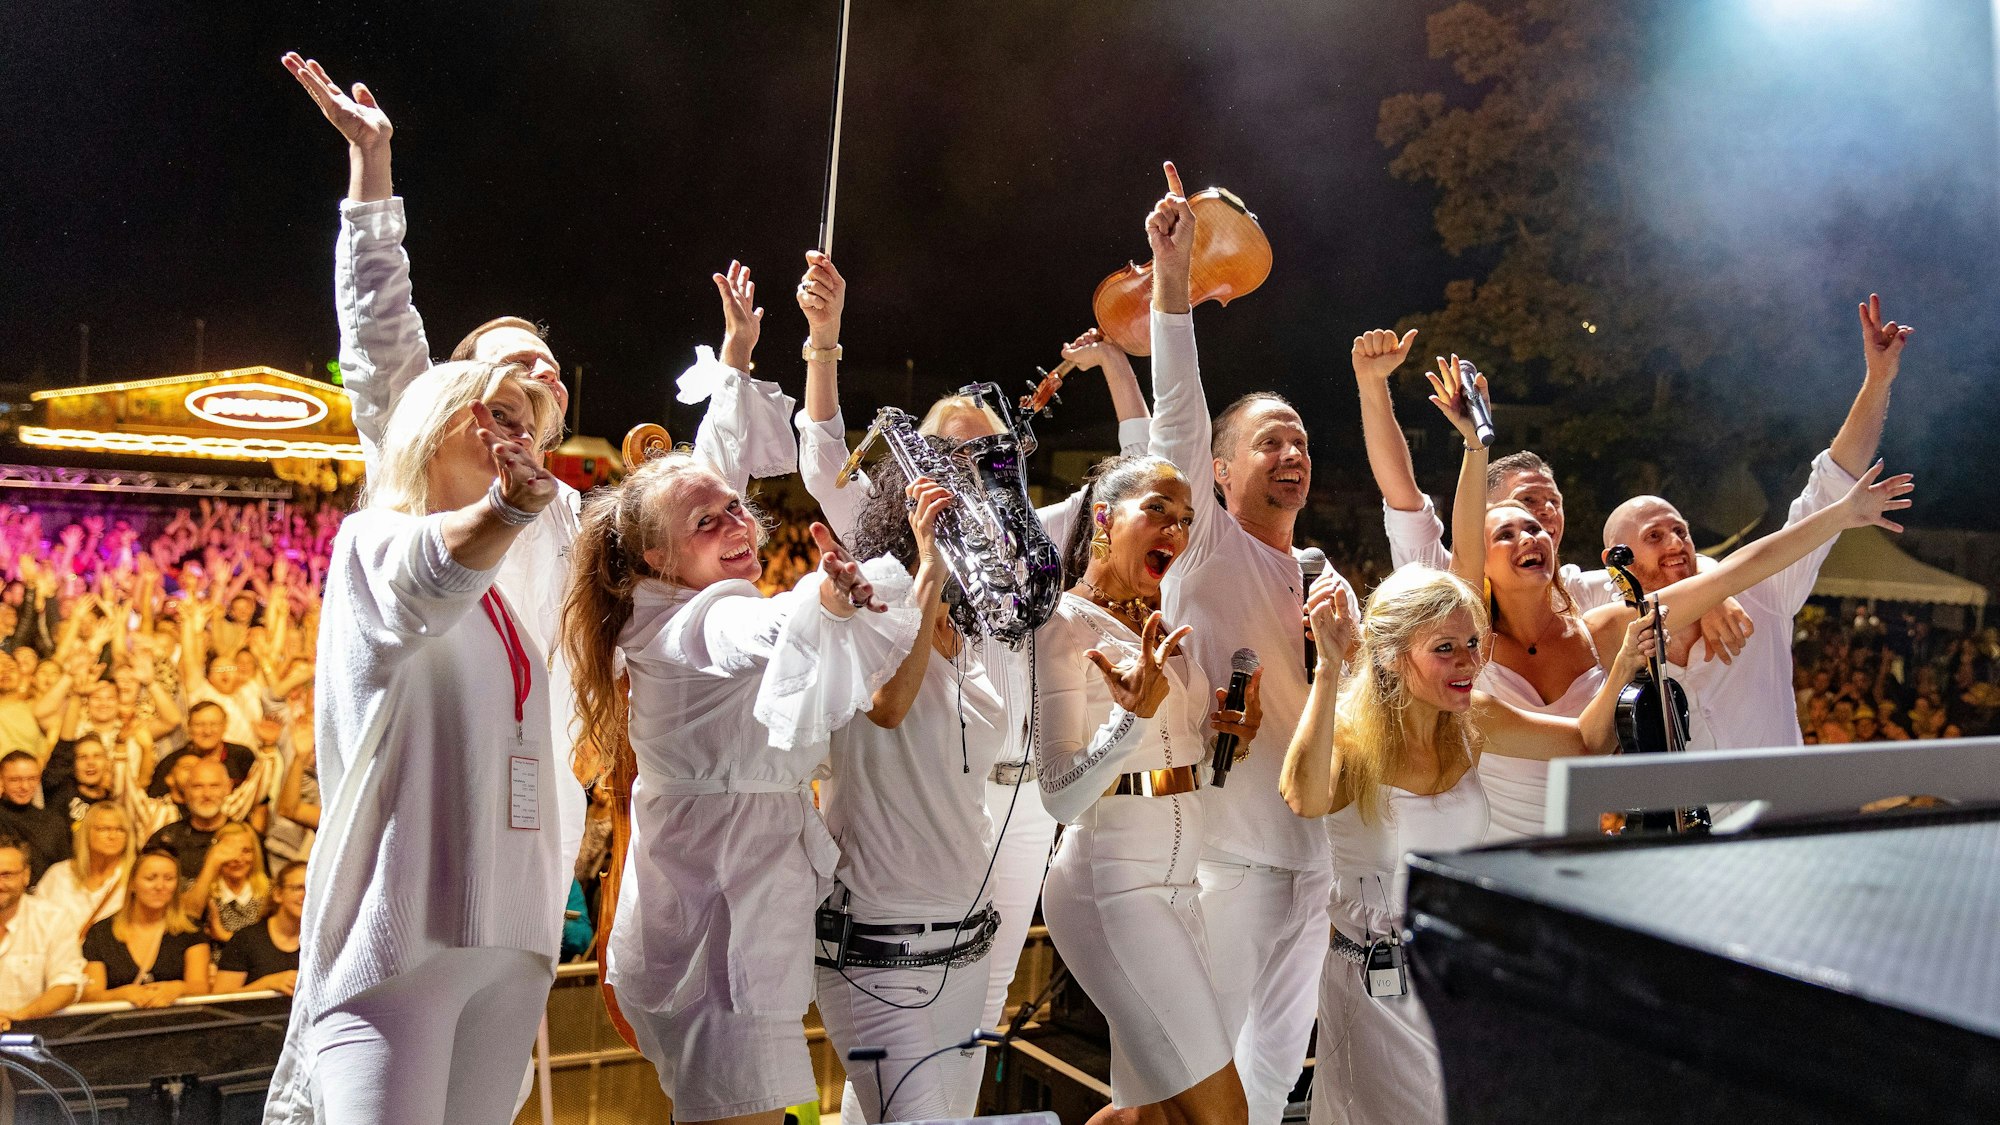 Menschen in weißer Kleidung, mit Instrumenten in der Hand, jubeln auf einer Bühne.